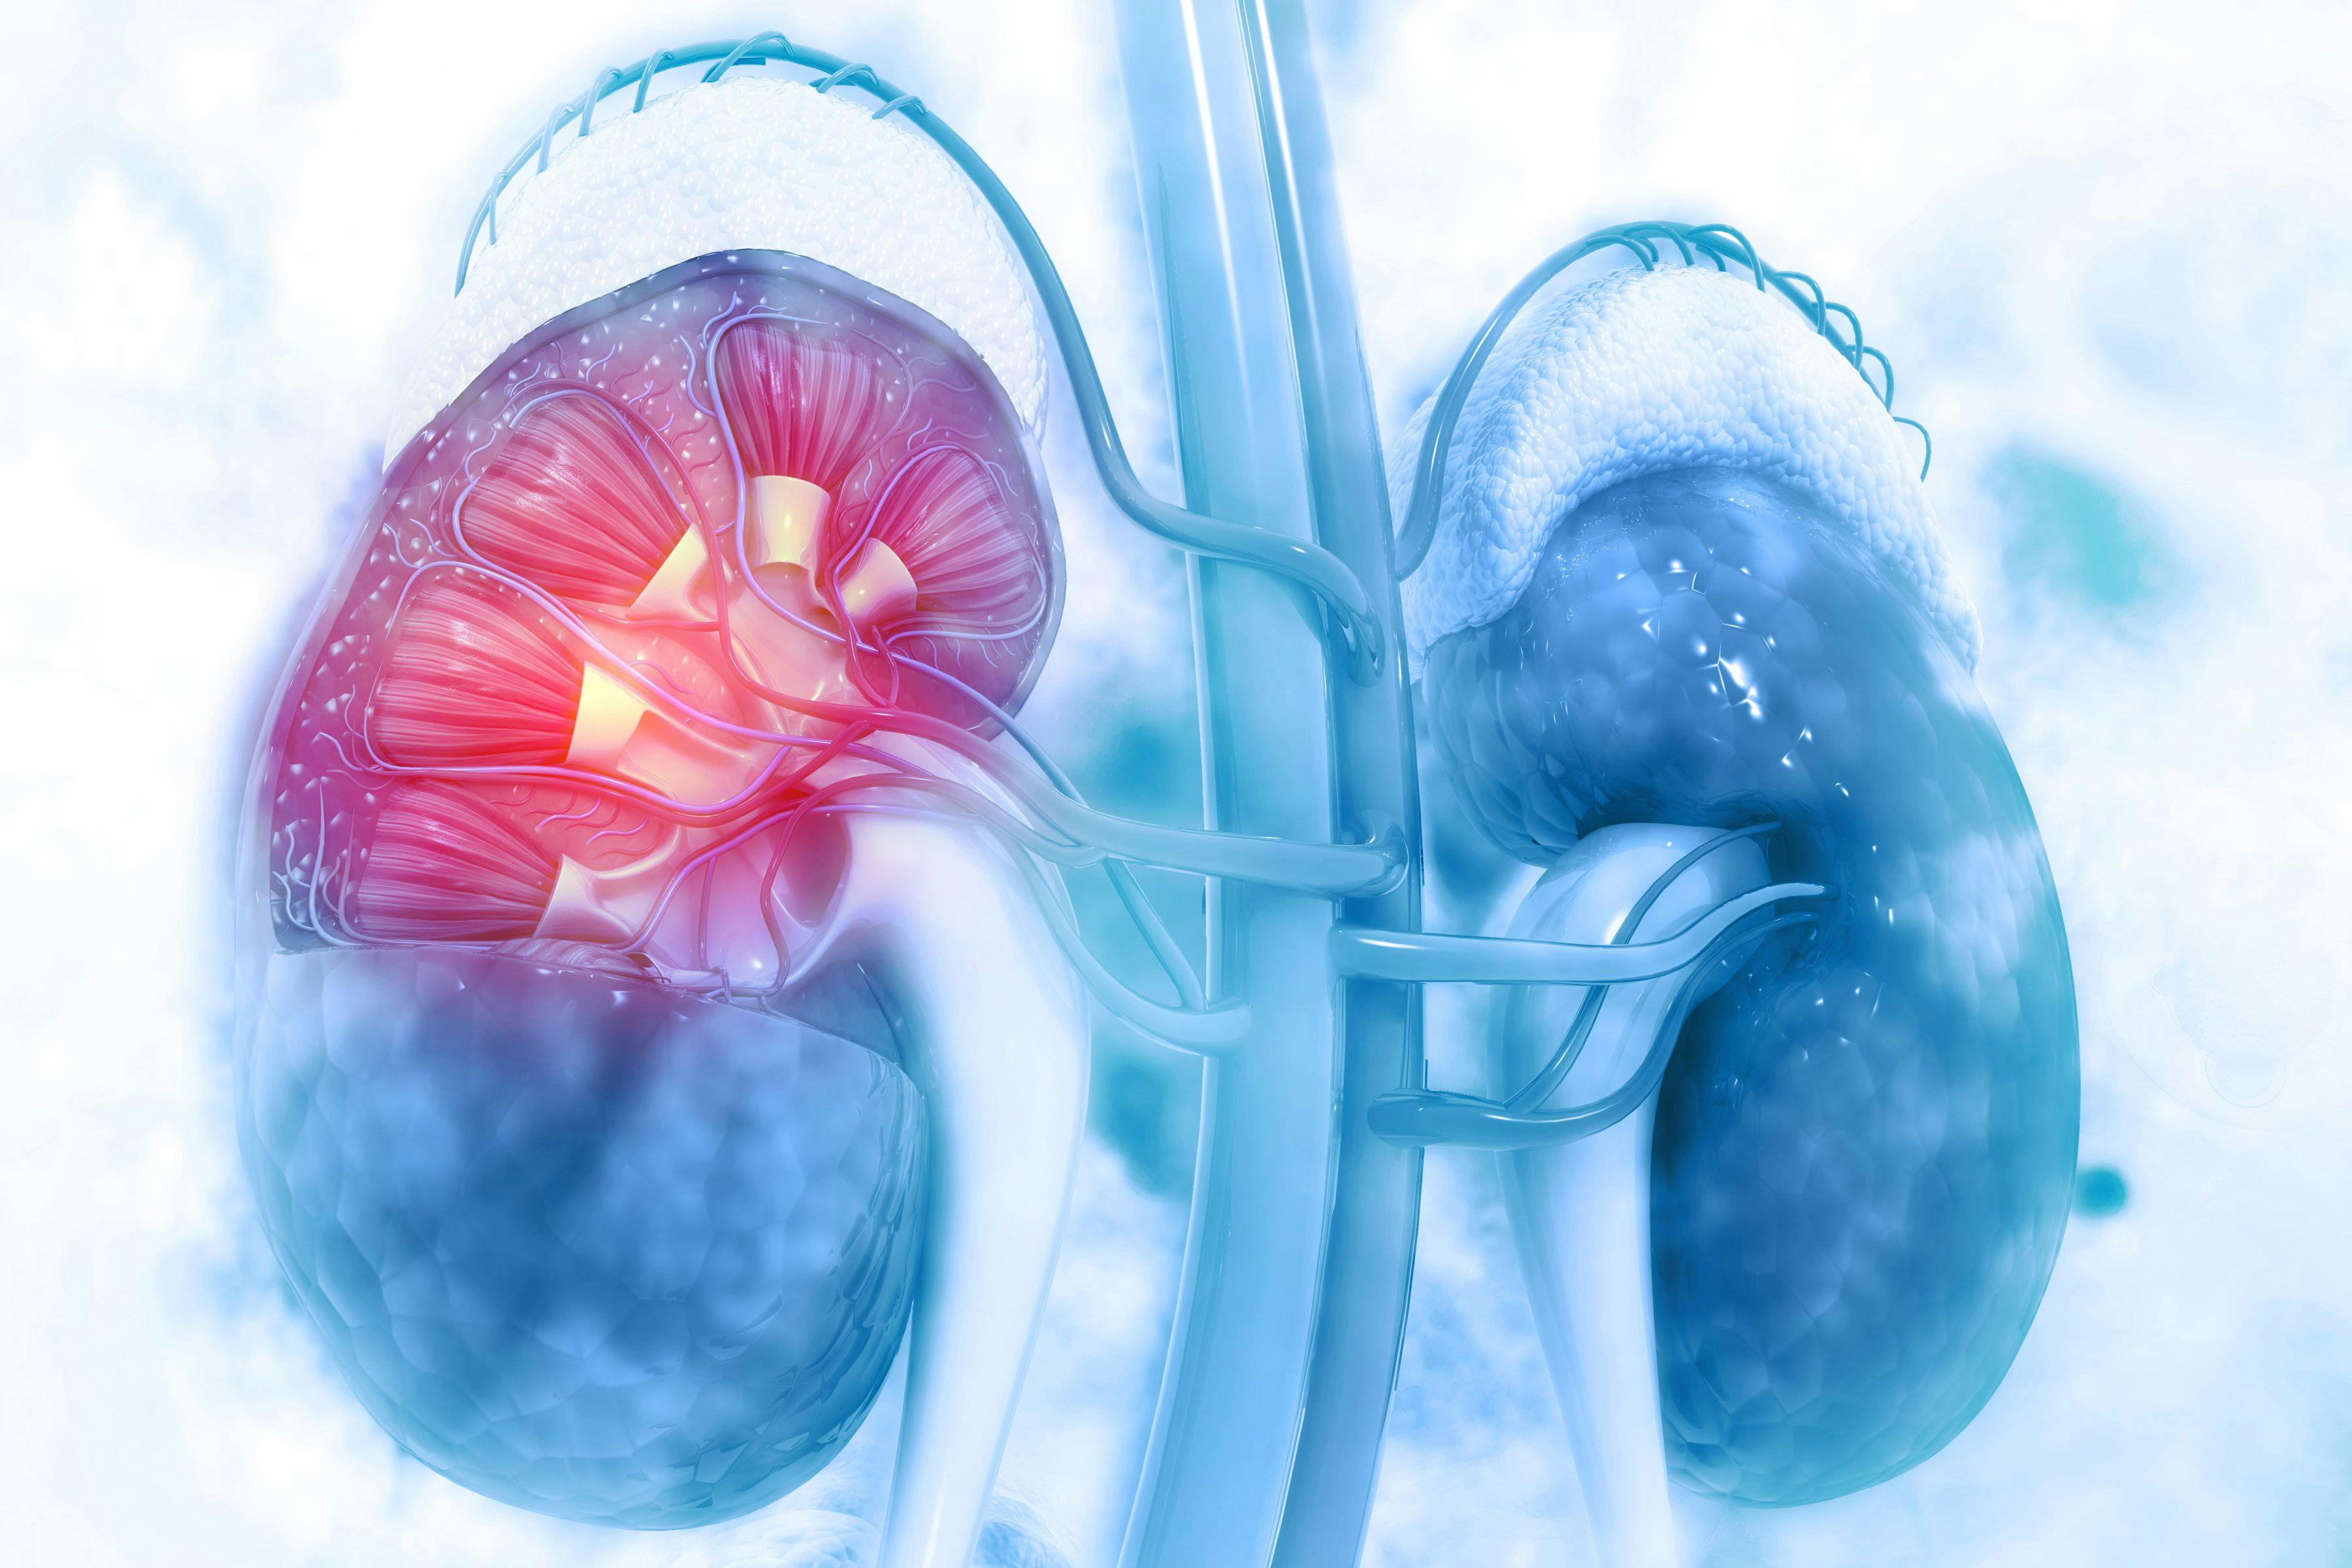 Digital illustration of kidneys. | Credit: Adobe Stock